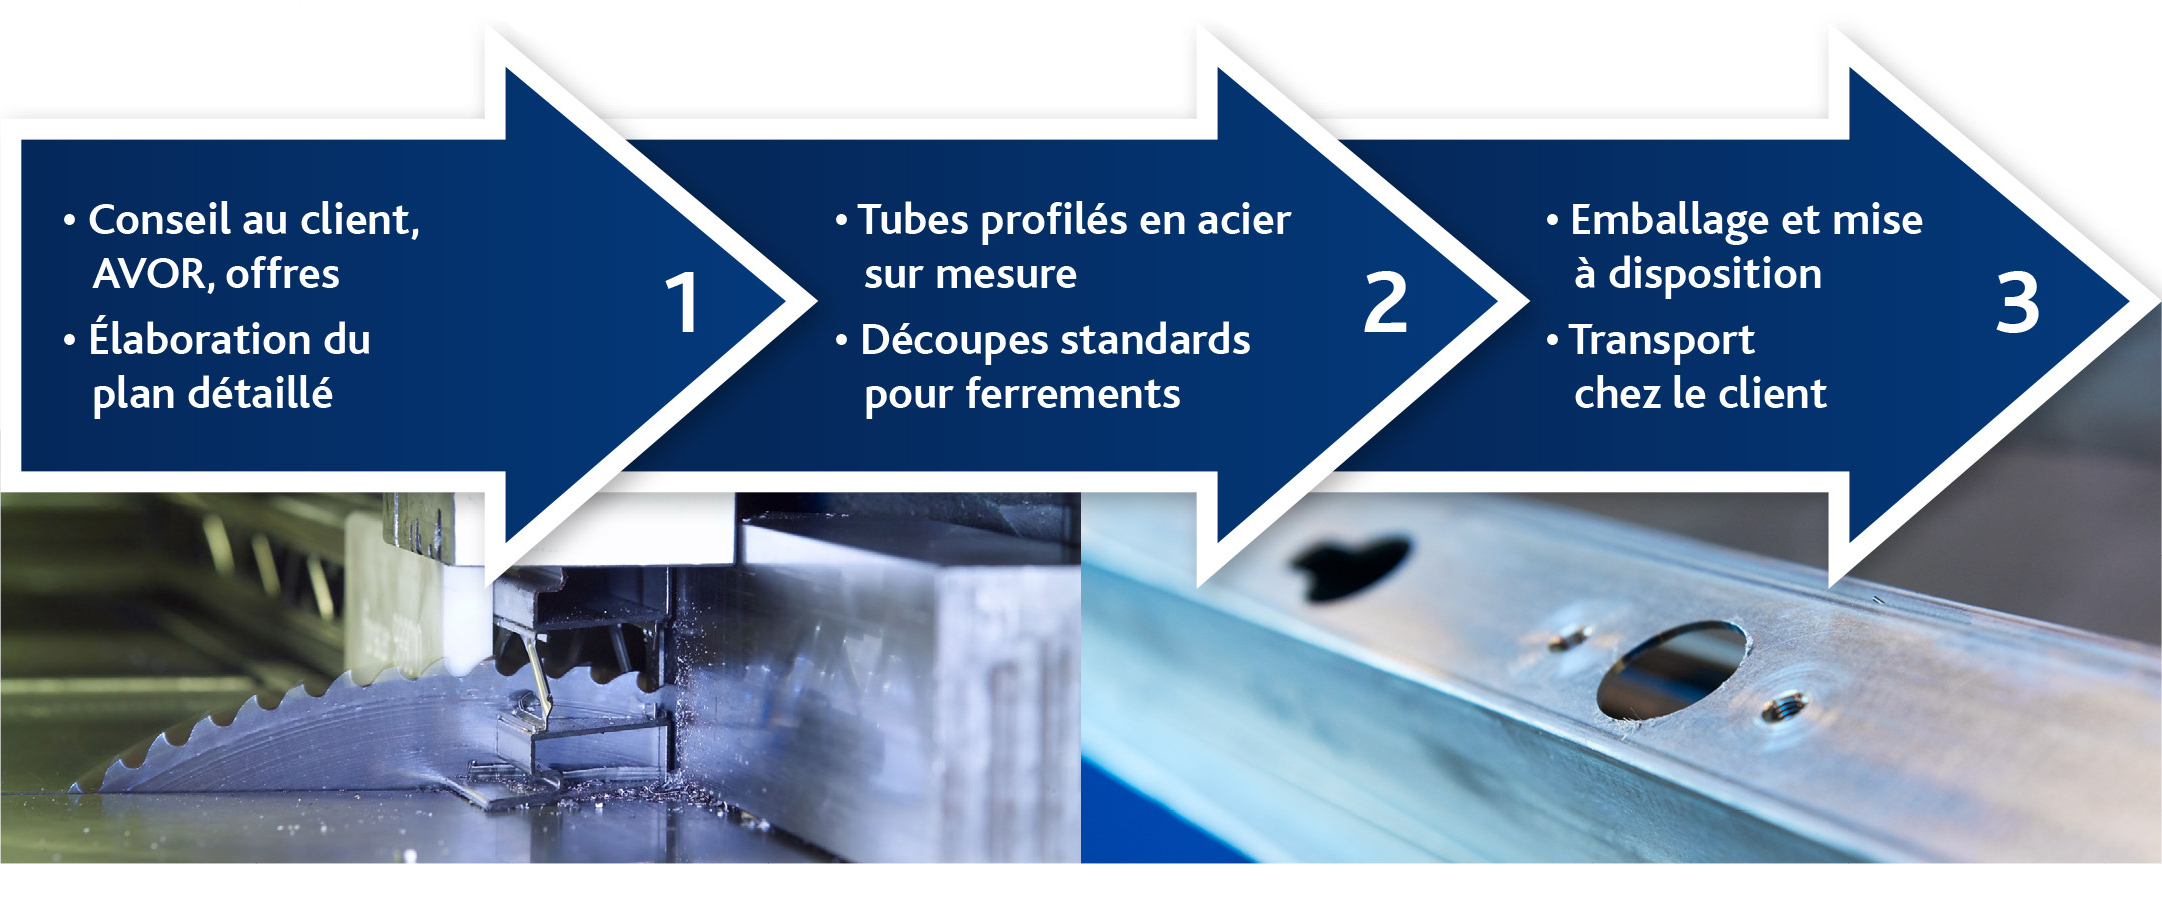 tubes-profiles-en-acier-sur-mesure-processus.jpg